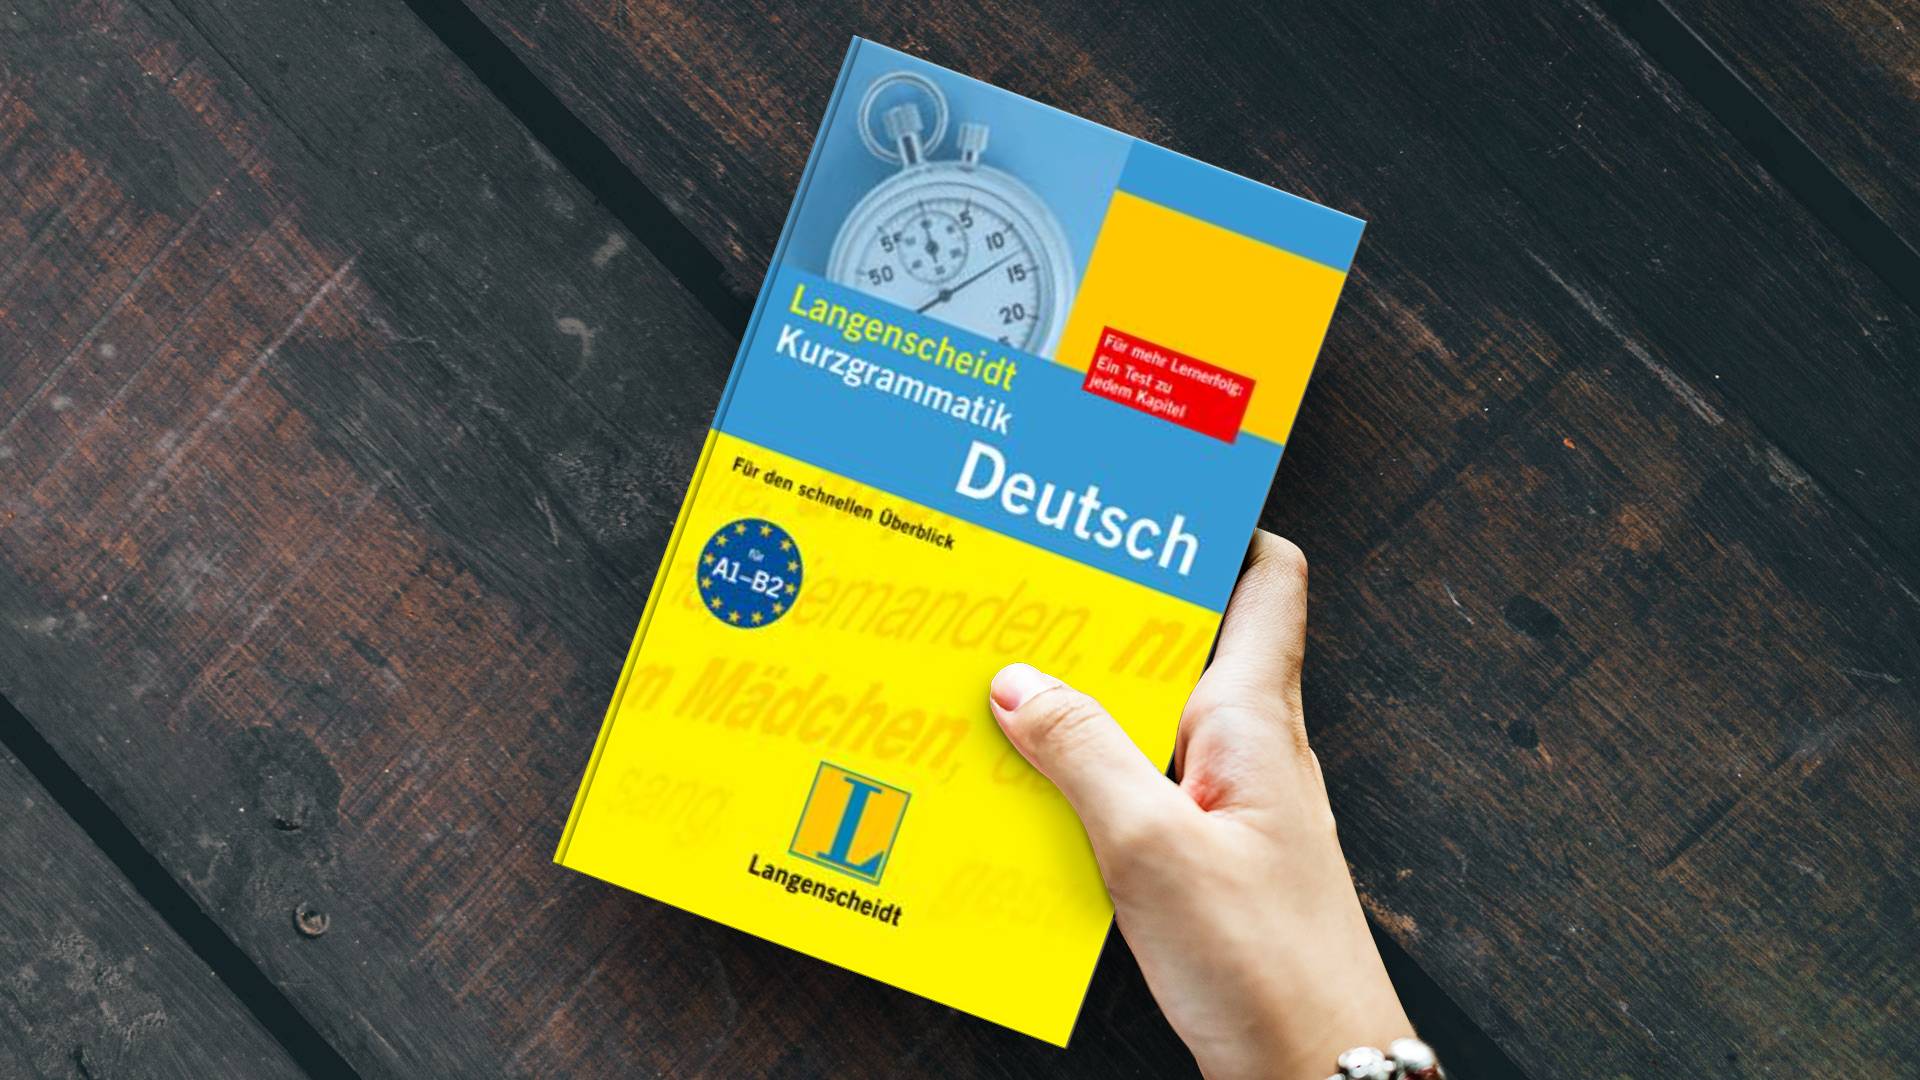 خرید کتاب زبان | زبان استور | دستور زبان آلمانی | Langenscheidts Kurzgrammatik Deutsch